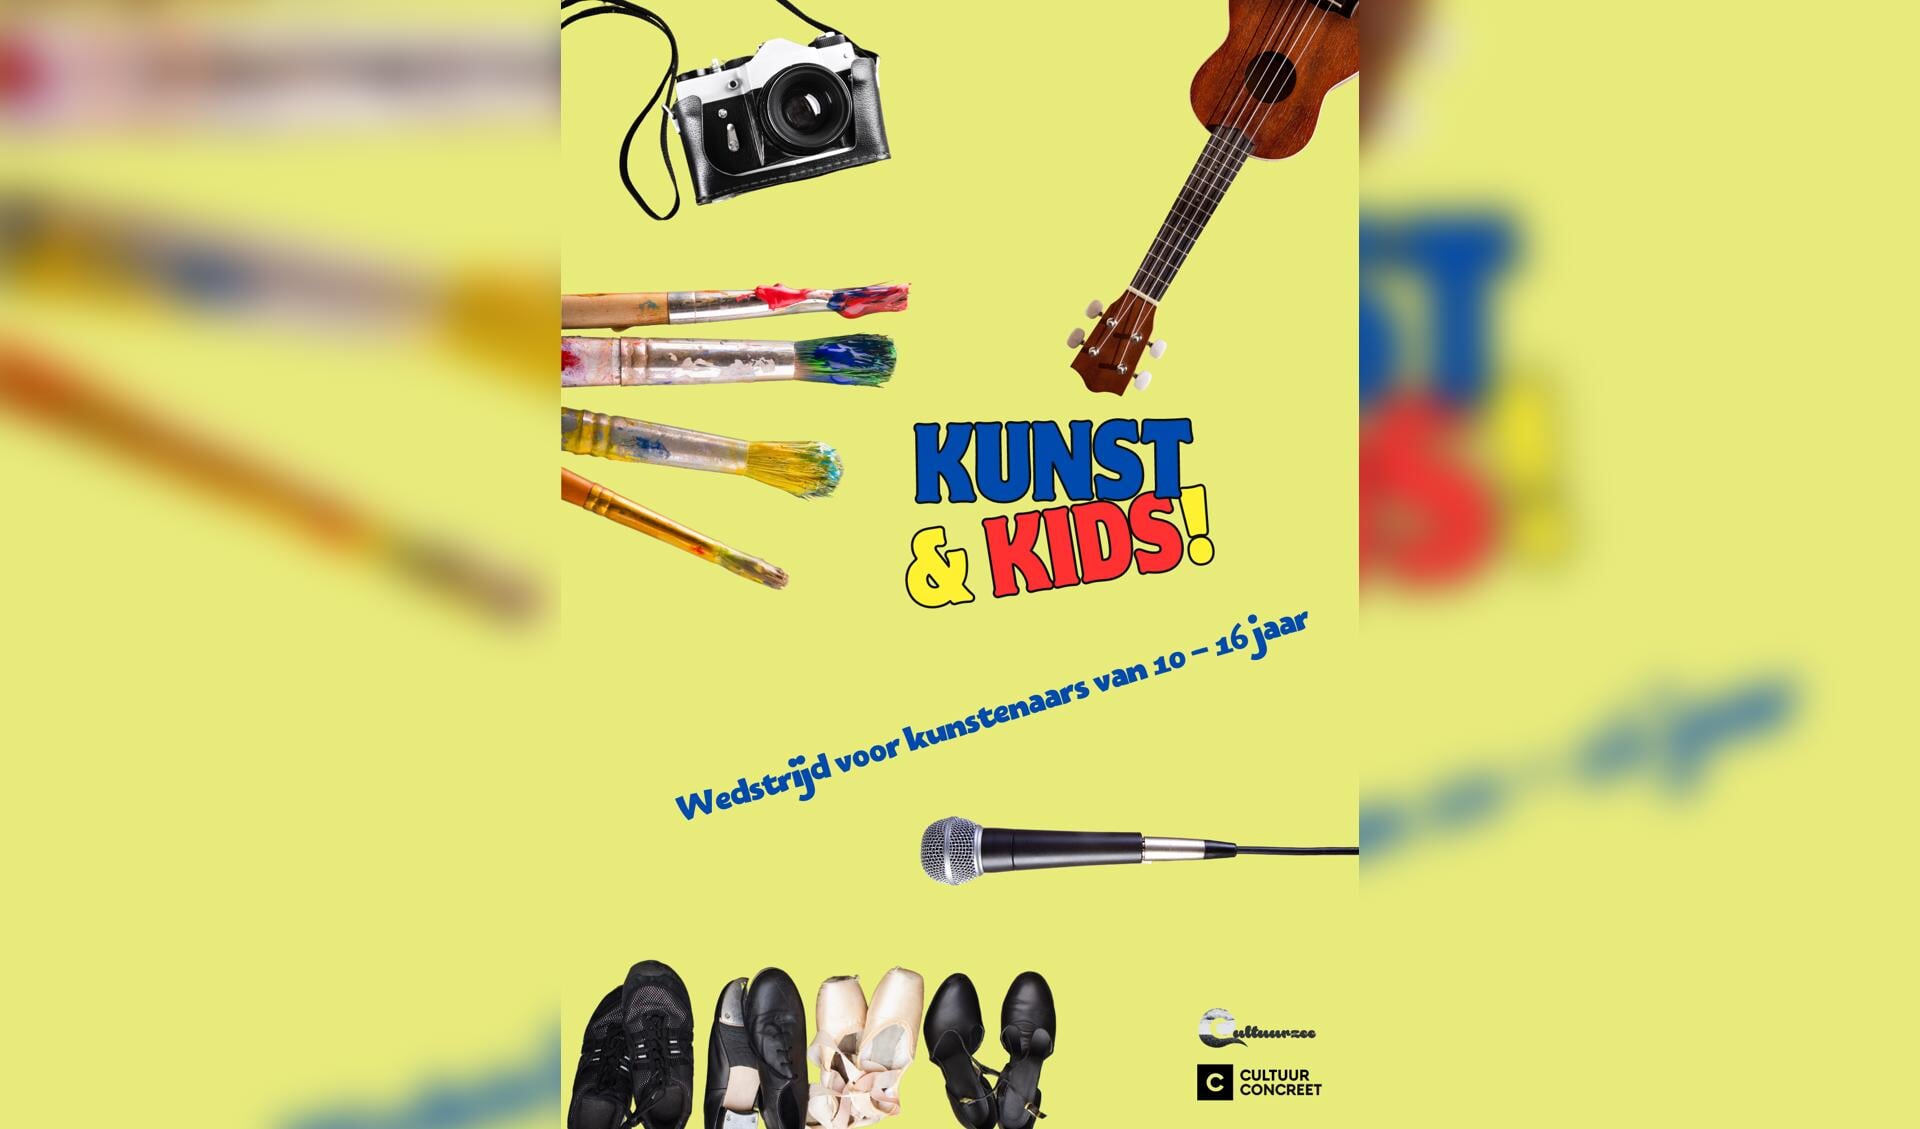 Kunst & Kids: Kunstwedstrijd voor de jeugd.